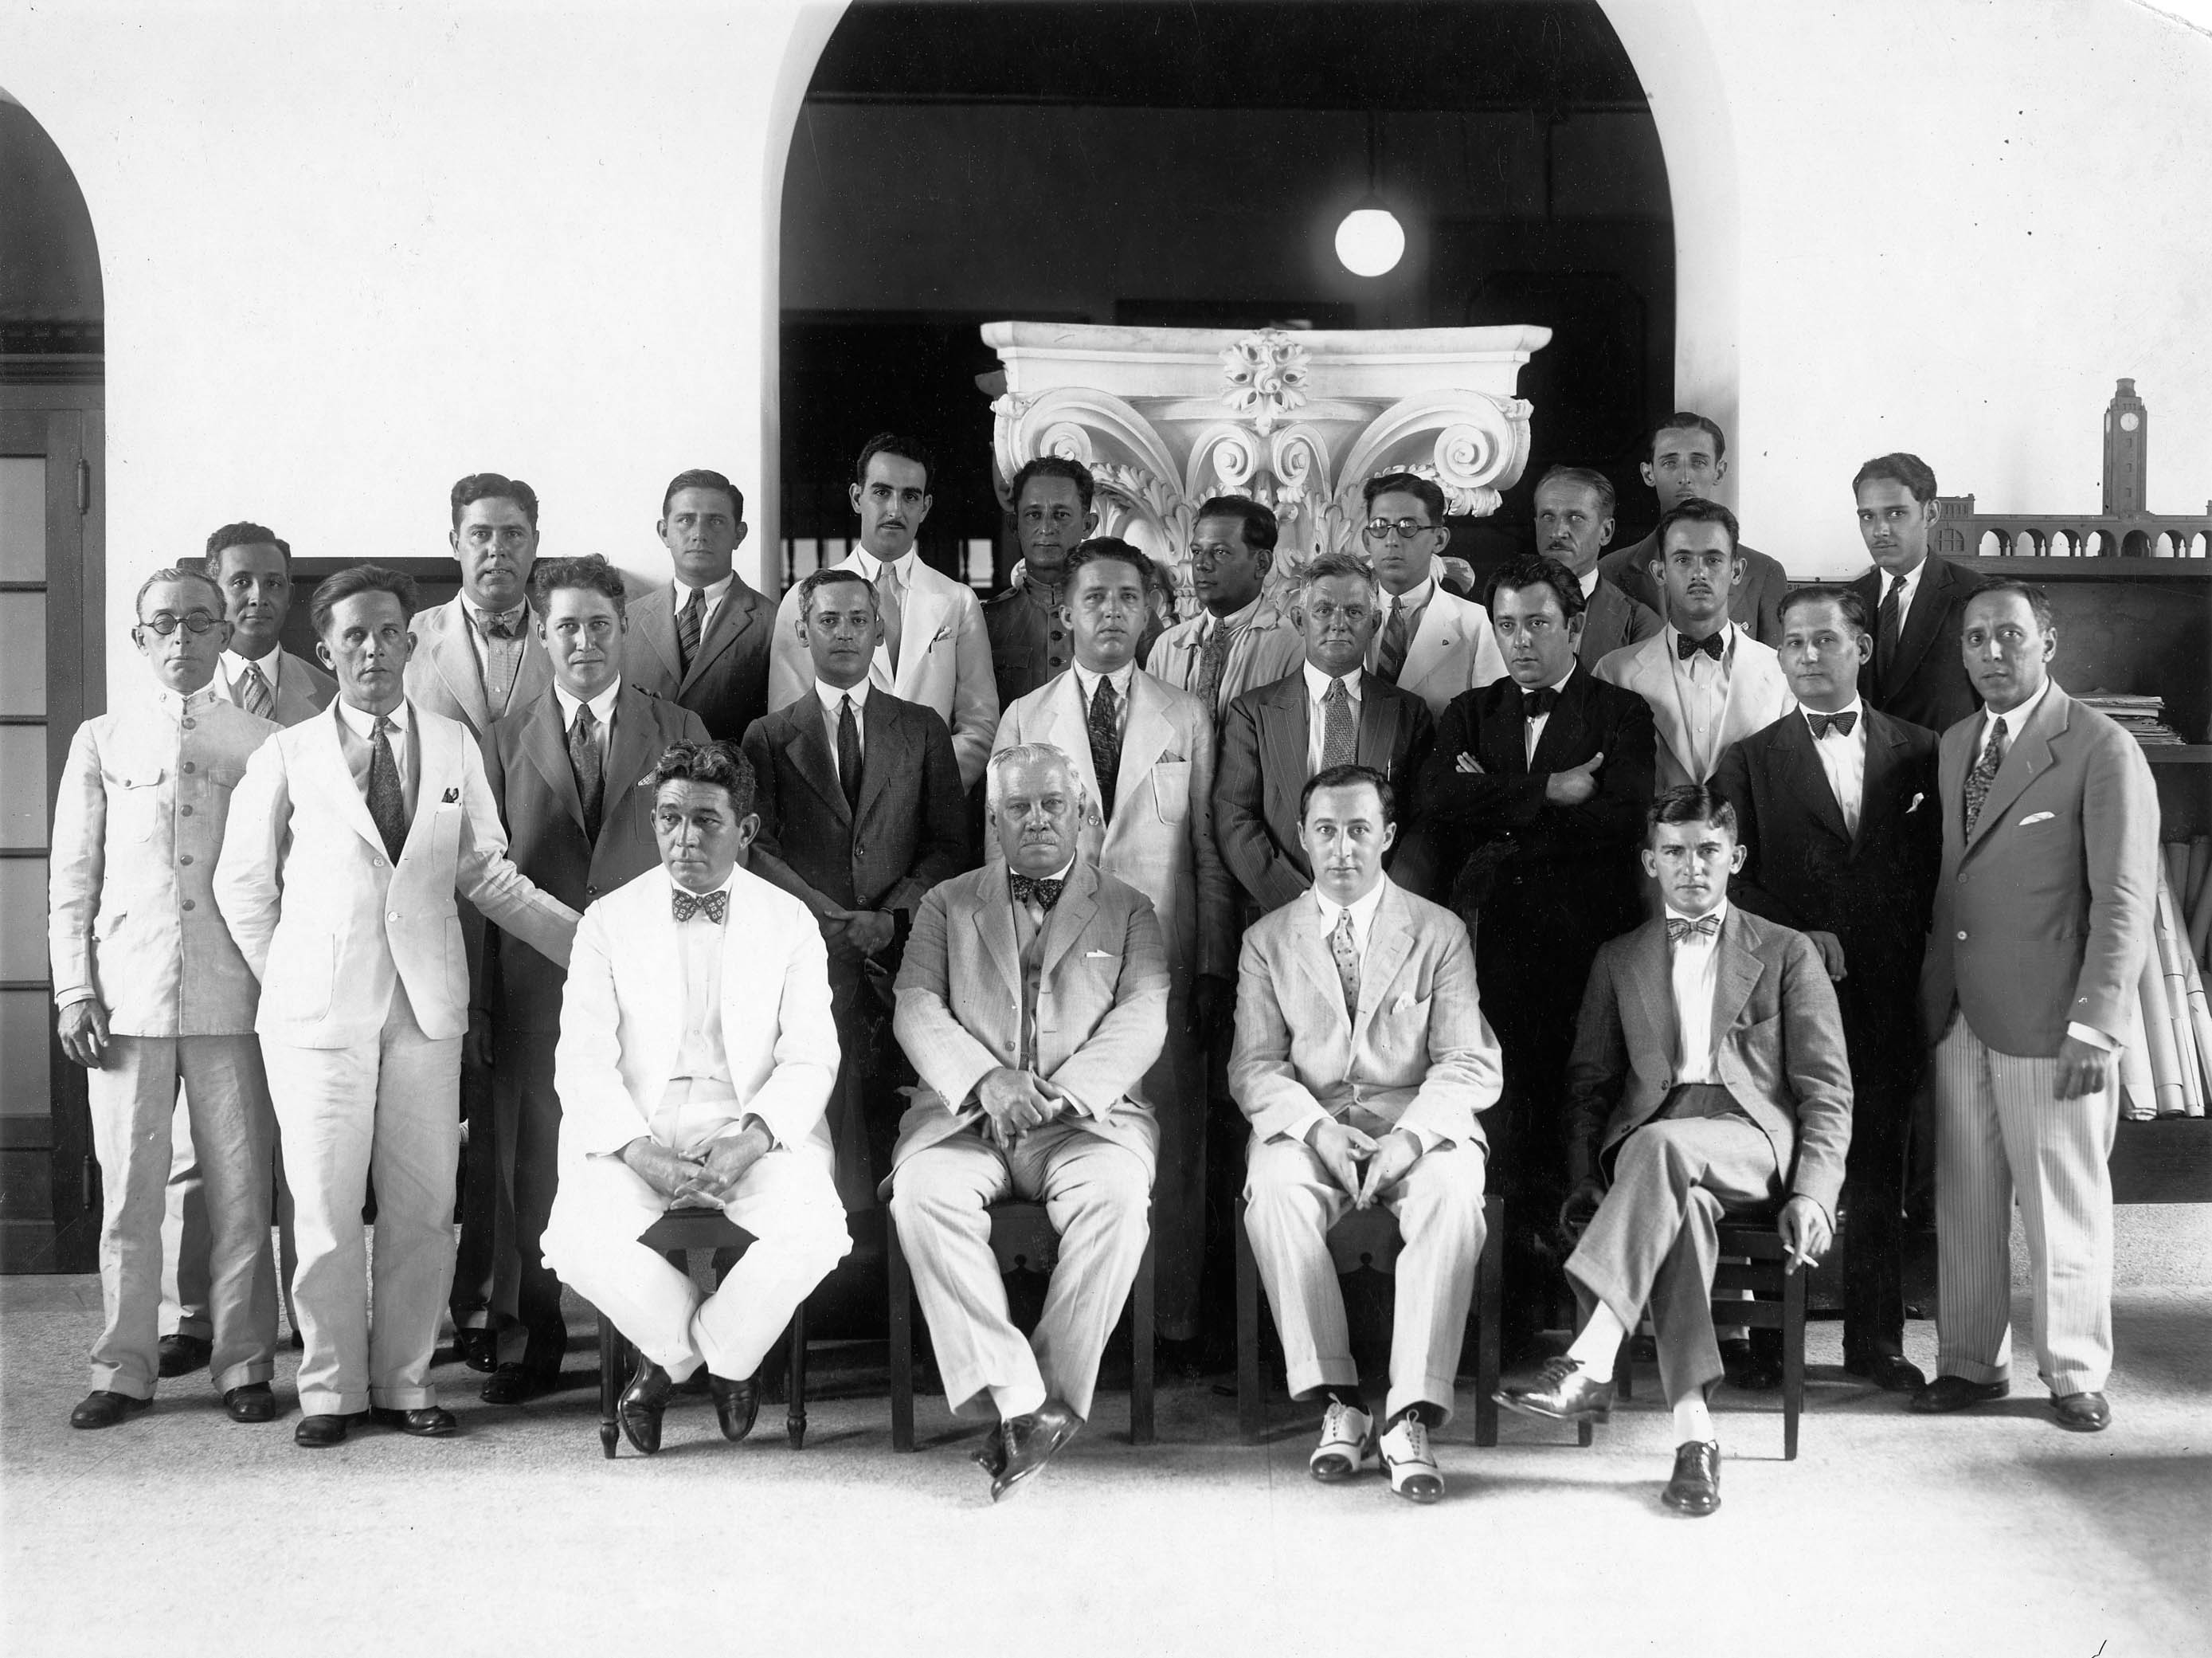 Membres de l'agence, avec Théodore Leveau assis au premier rang. Cl. anonyme. Nd © Fonds Théodore Leveau. SIAF/CAPa/Archives d’architecture du XXe siècle. 149 Ifa 04